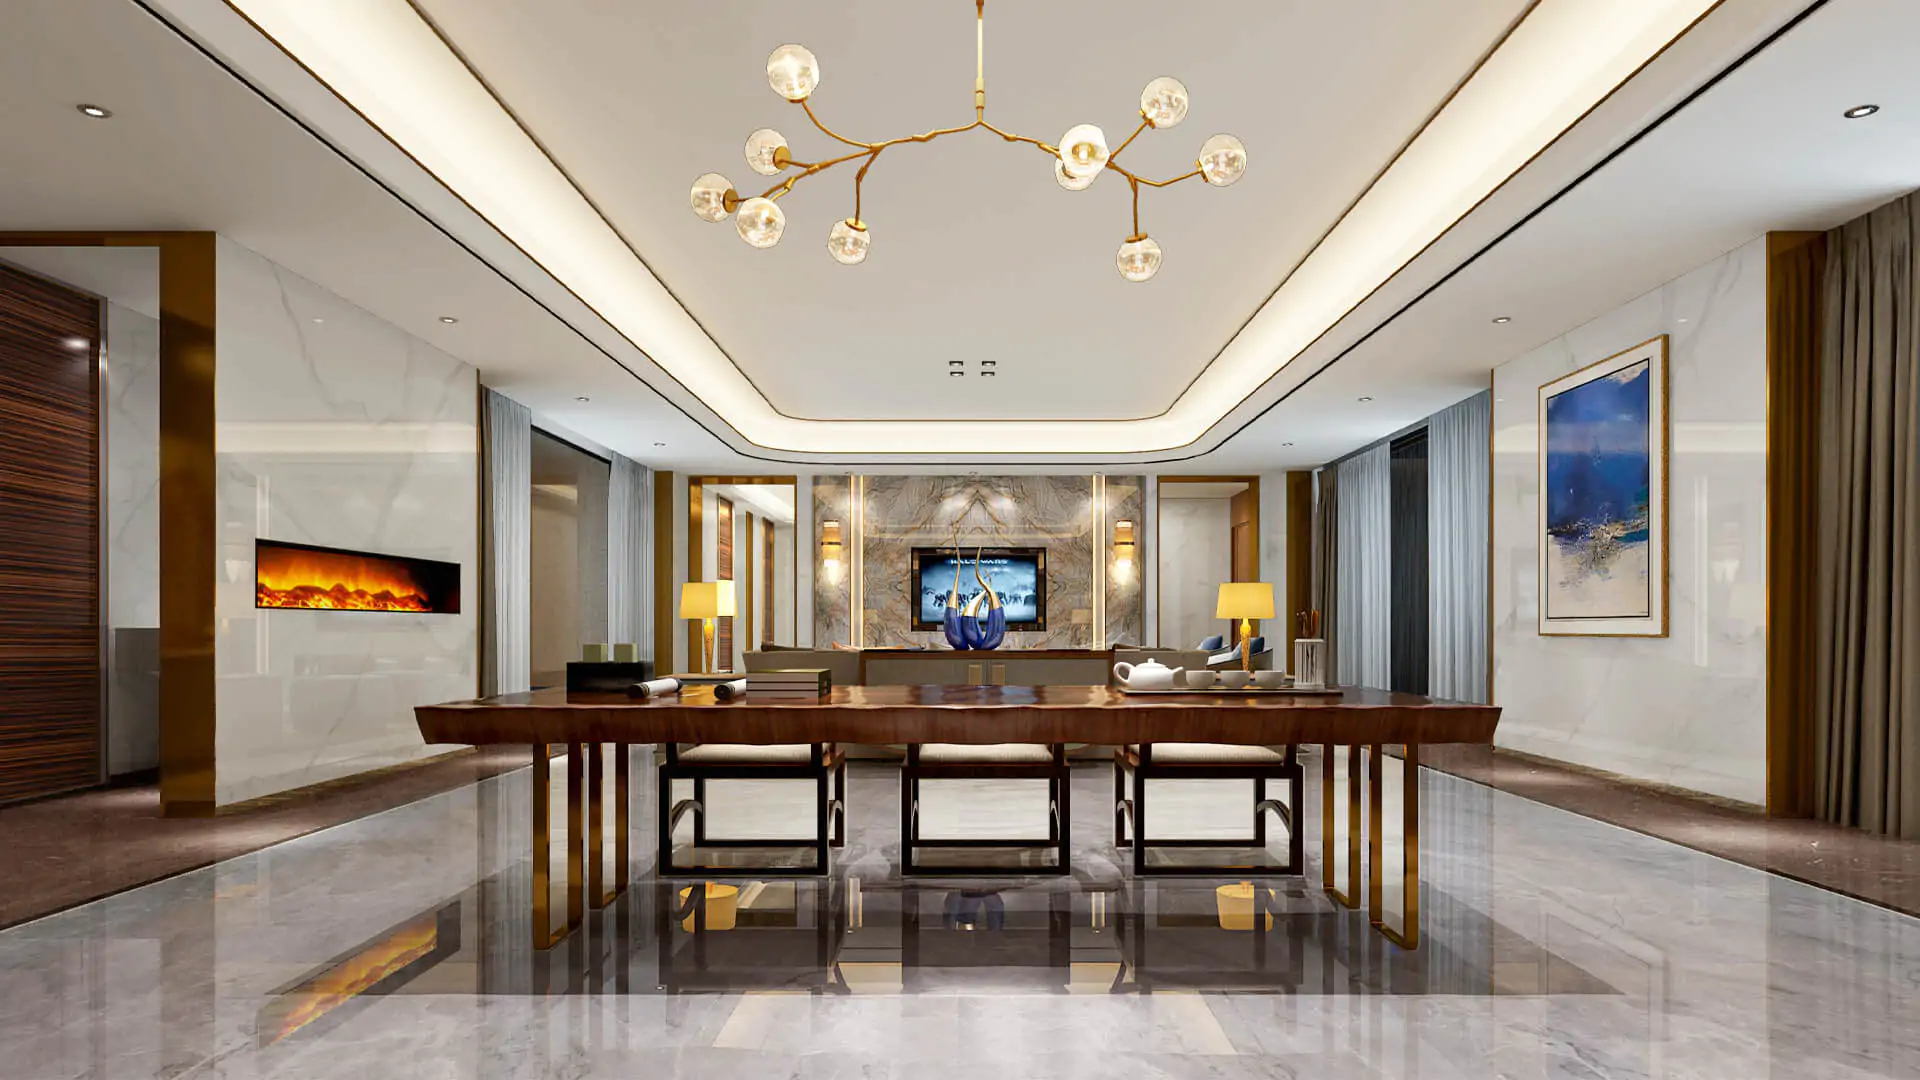 Luxury Home Interior Design Ideas